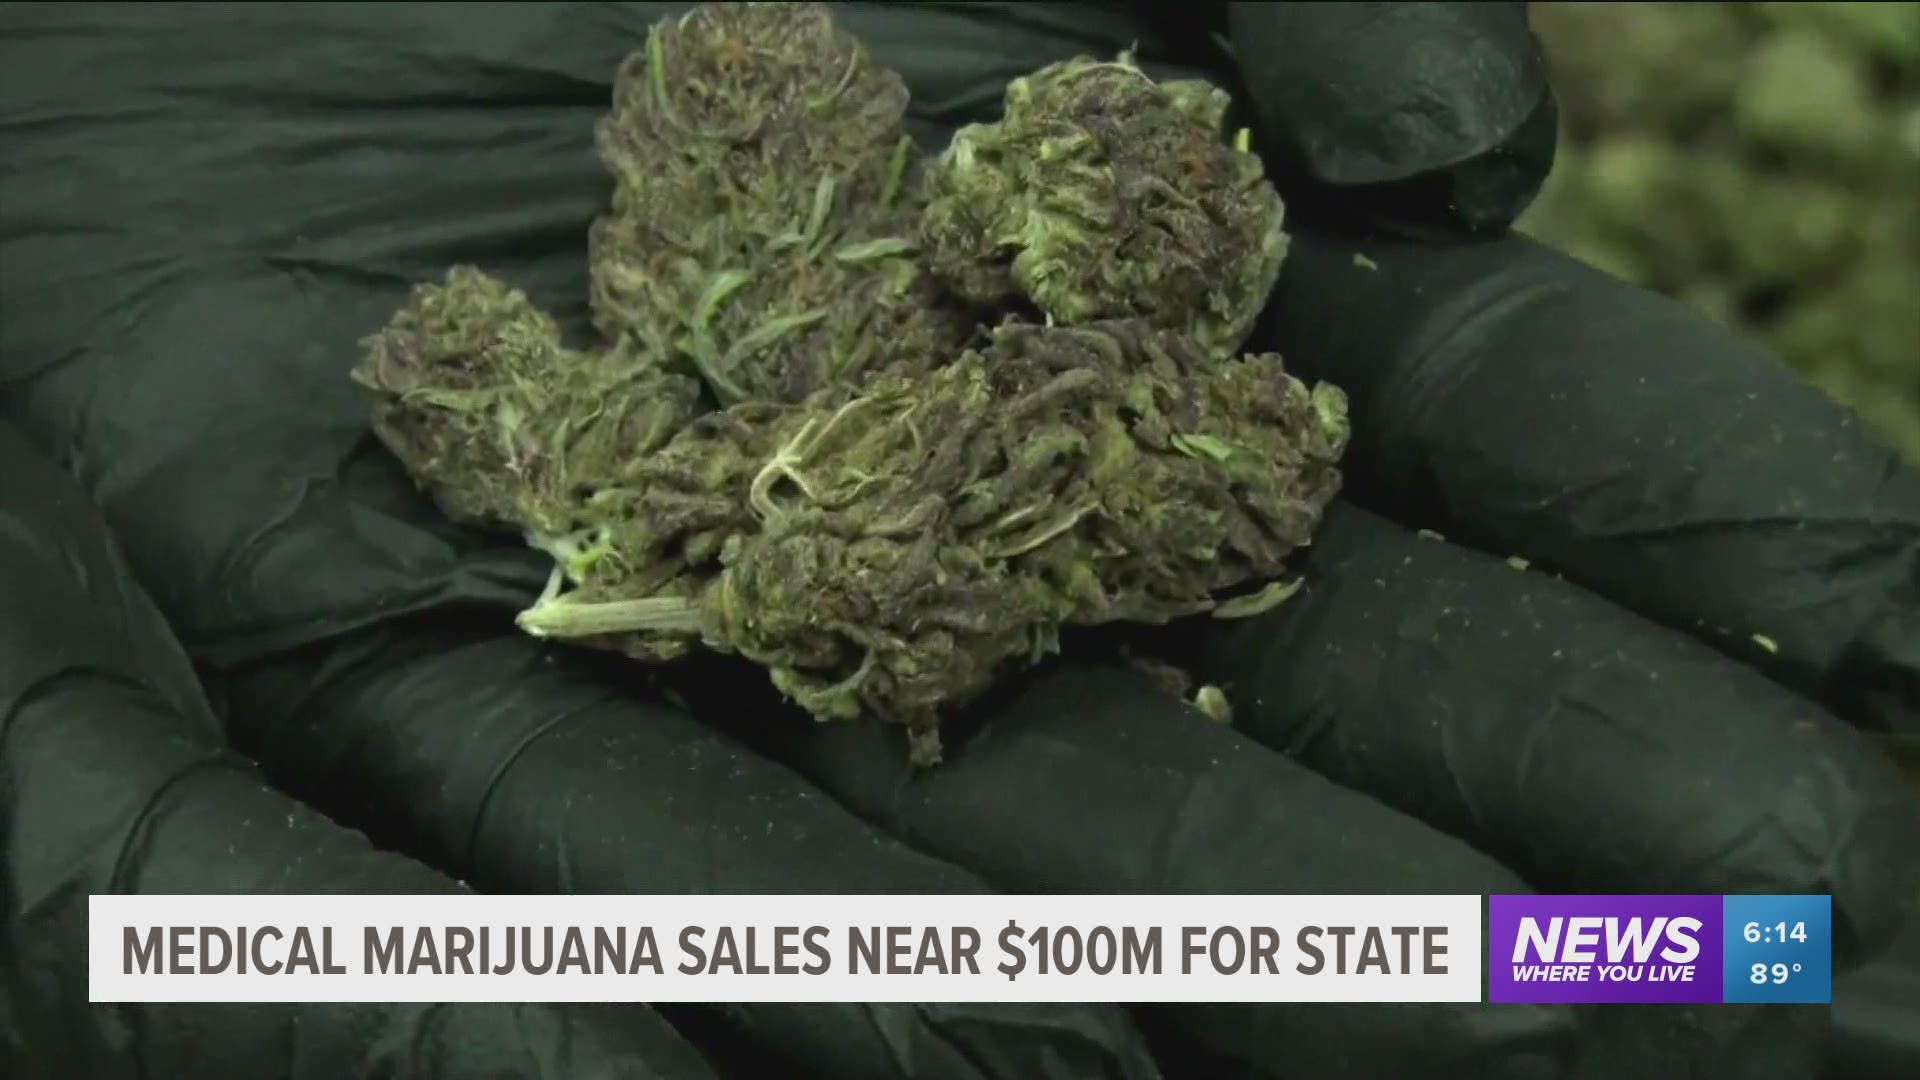 Arkansas Medical Marijuana Sales Near $100M